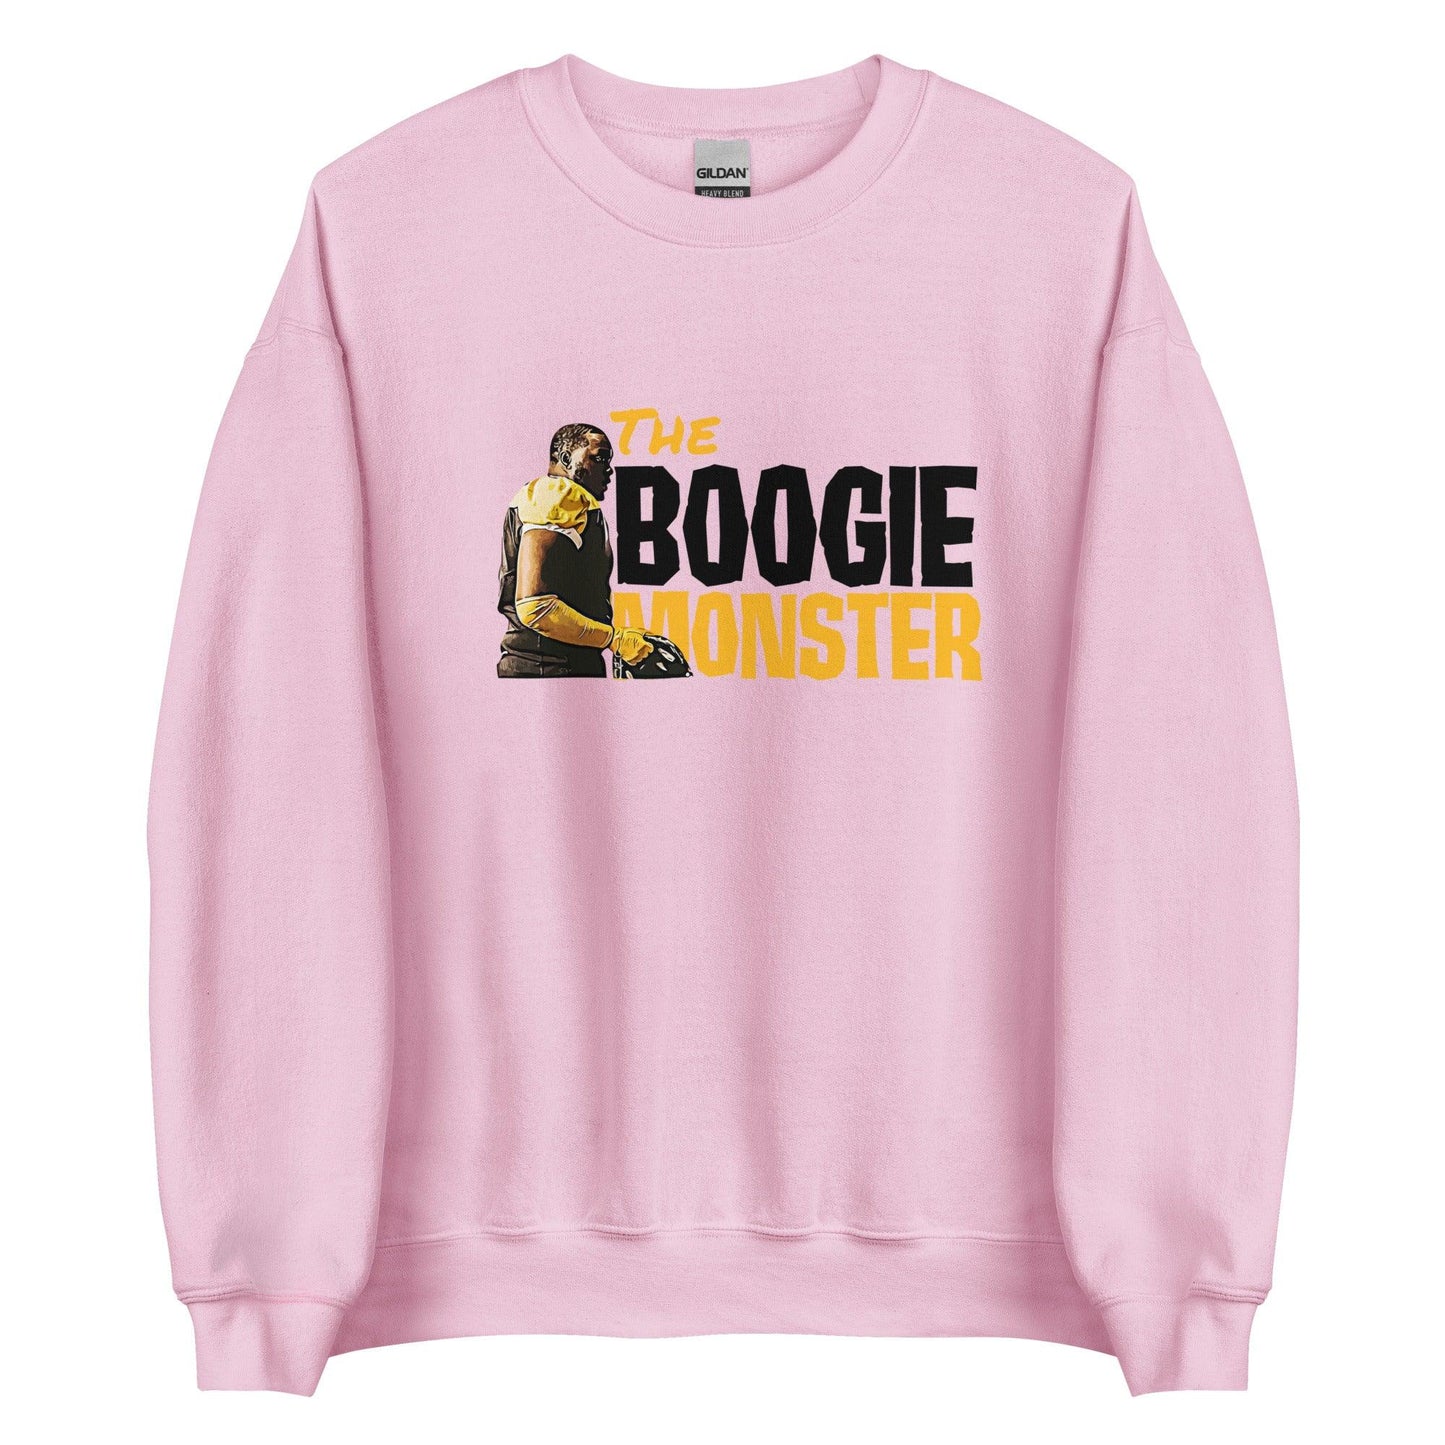 Boogie Roberts "Monster" Sweatshirt - Fan Arch